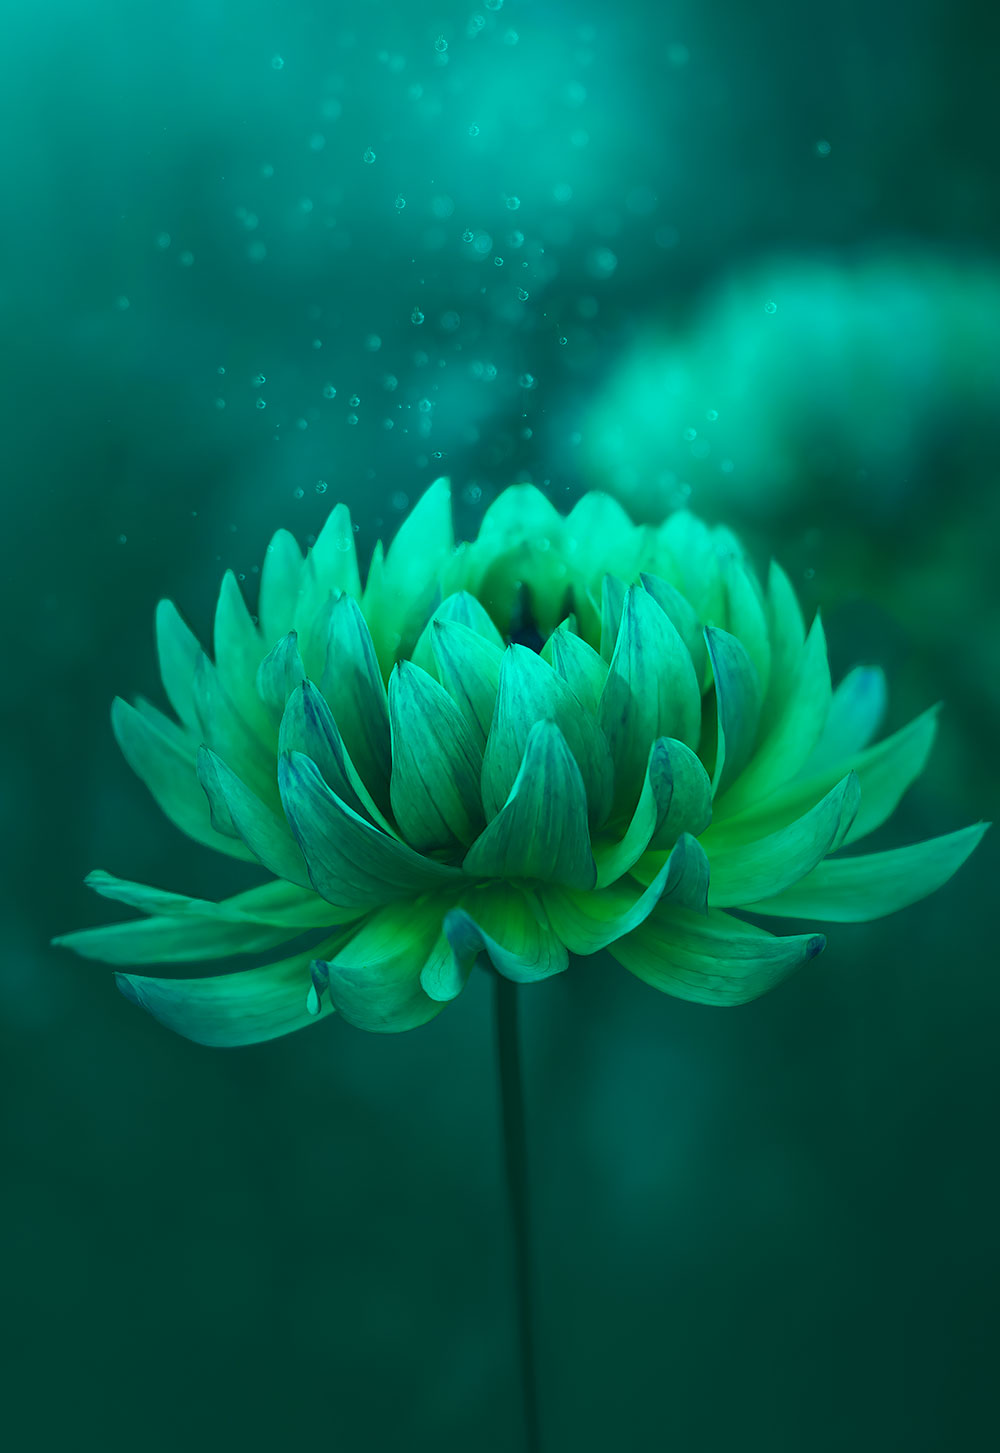 Substance design, green flower image for Bradhams branding